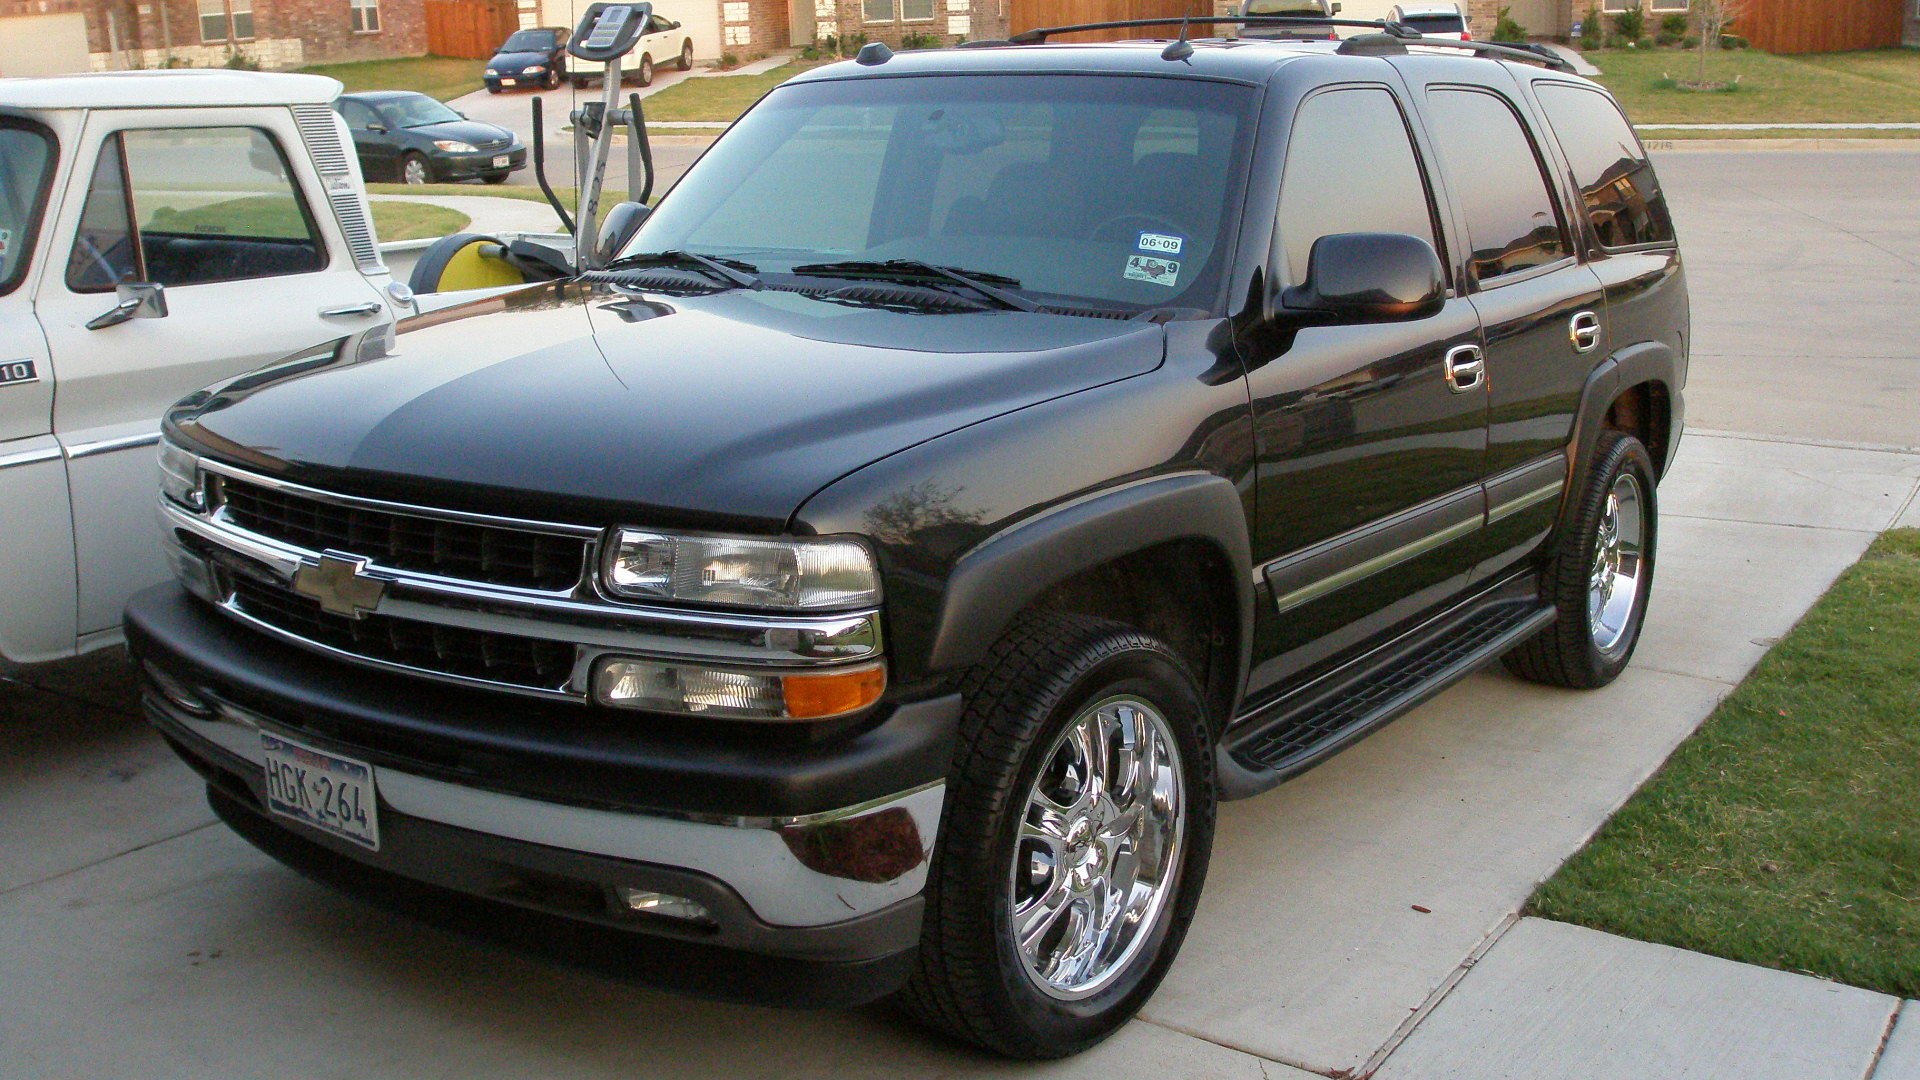 Chevrolet Tahoe 2005